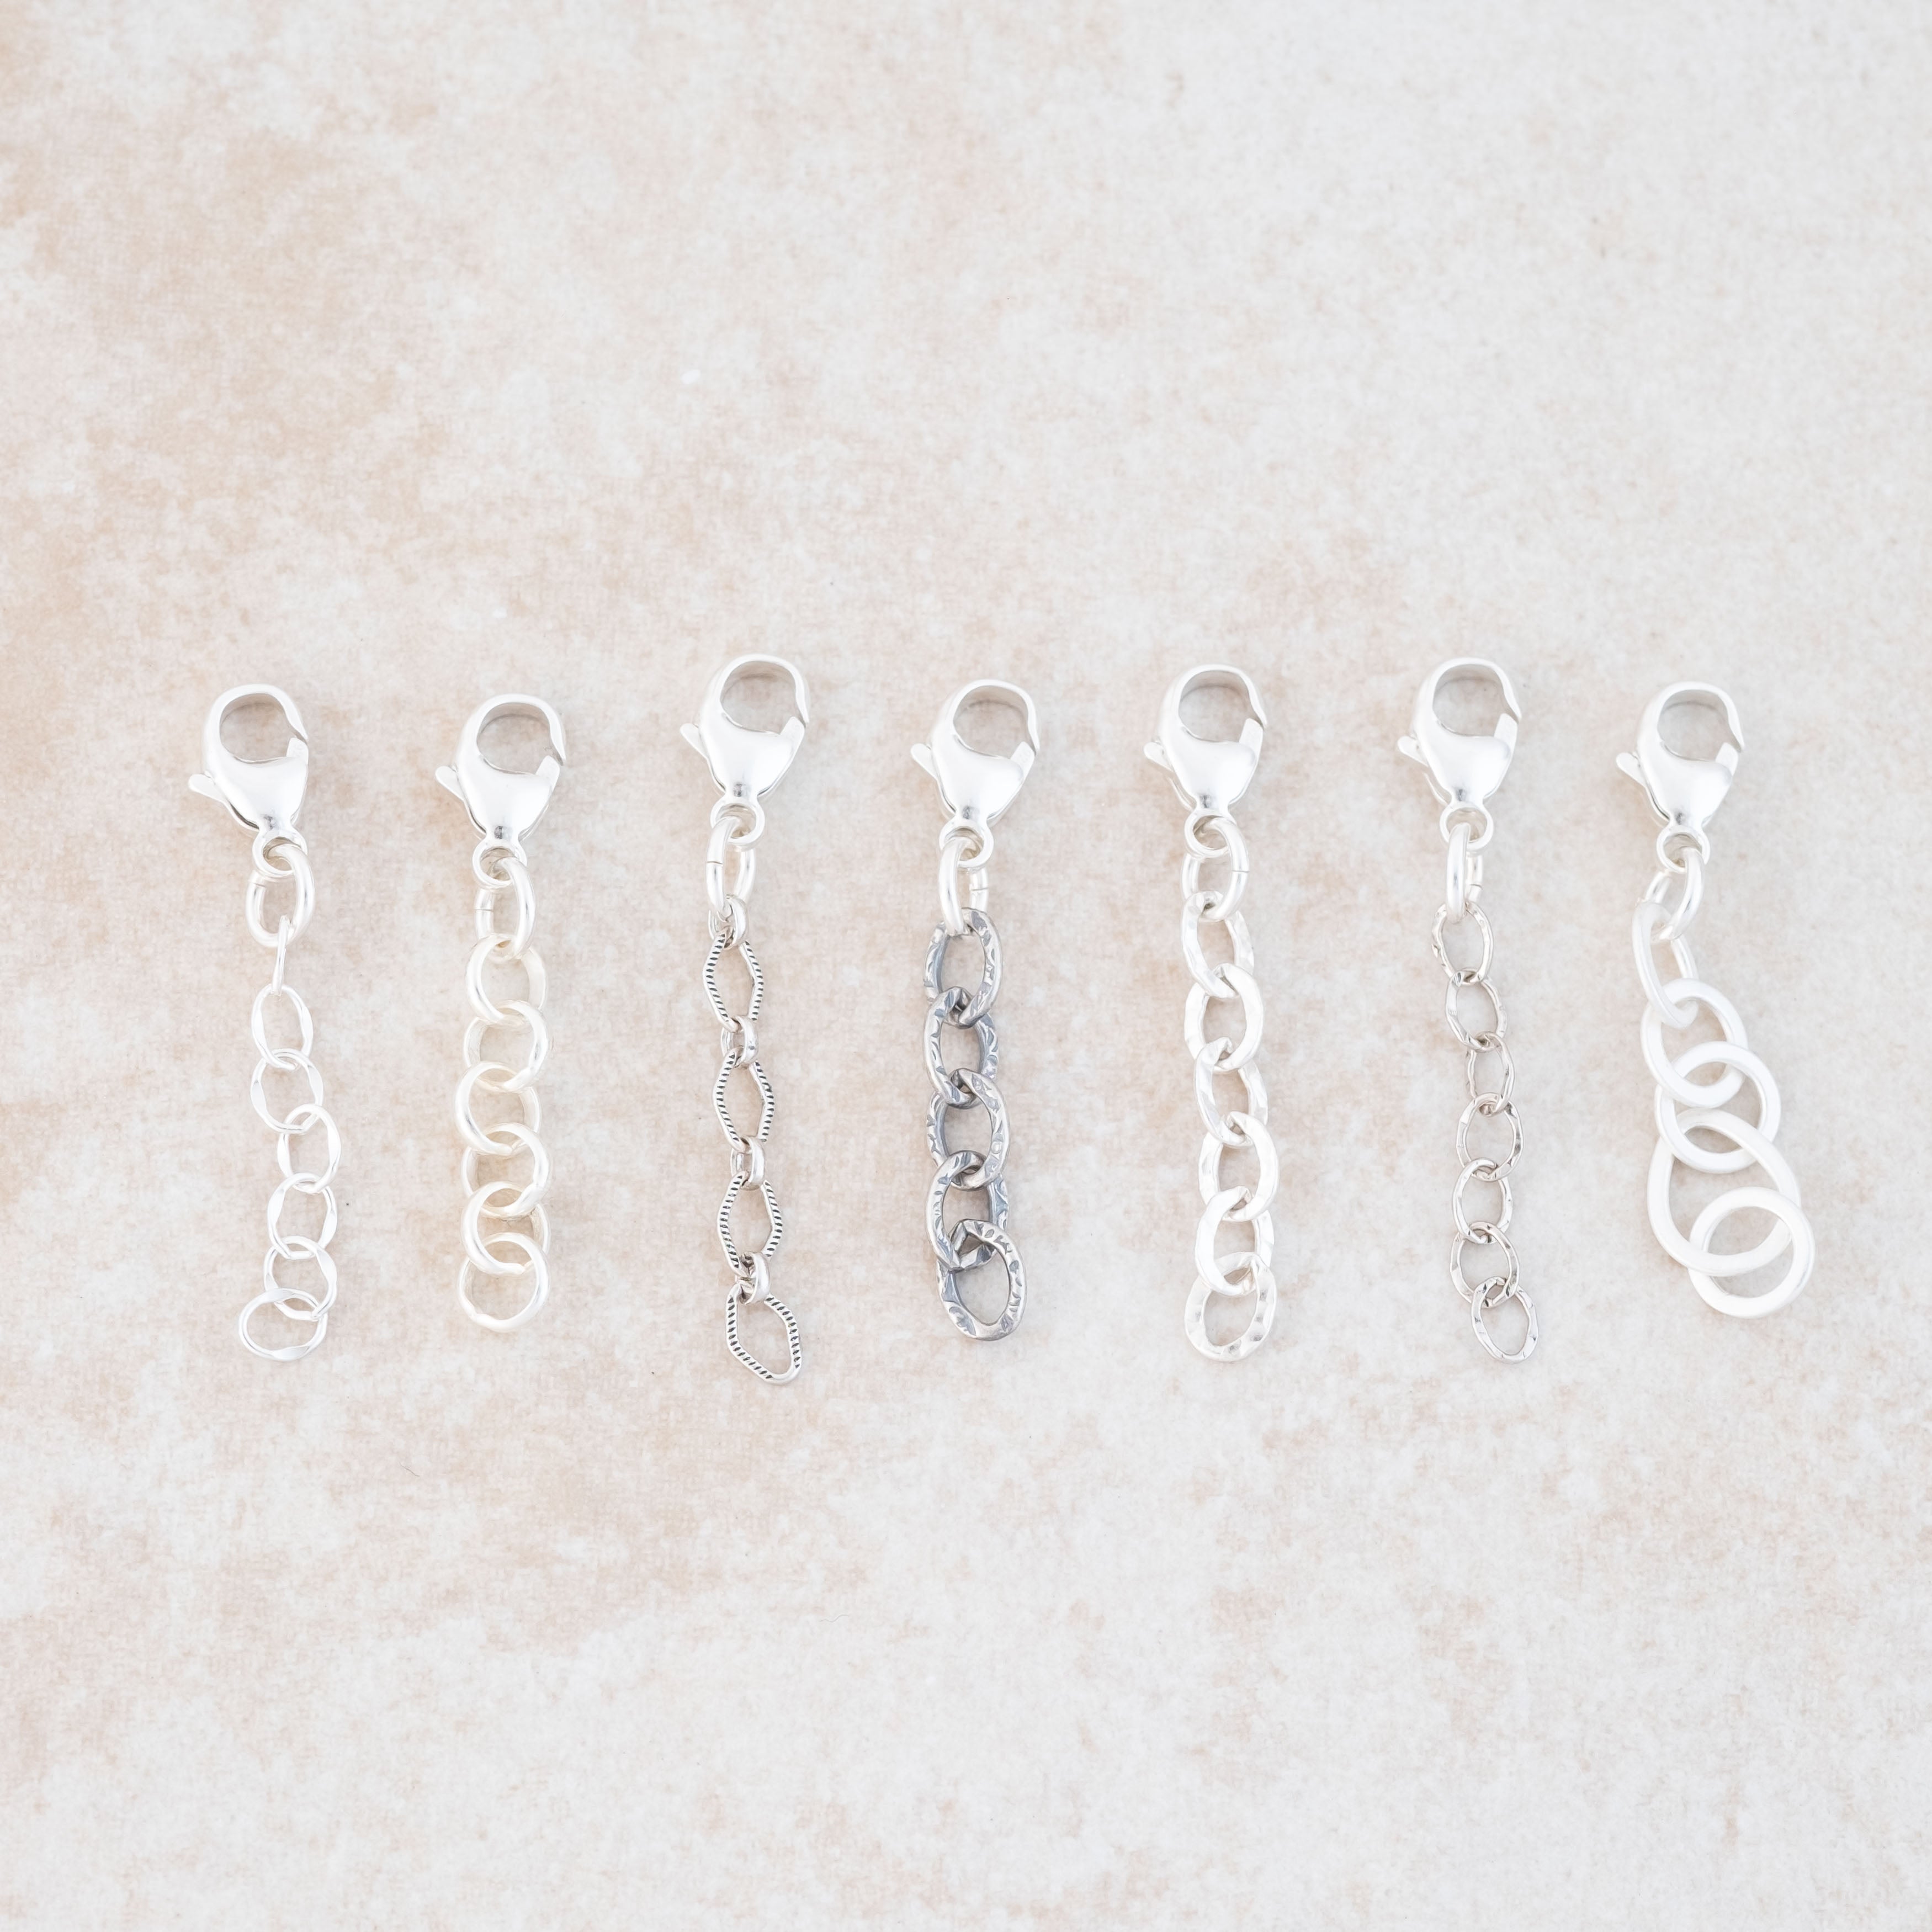 6 Pcs Necklace Extension Bracelet Extender Sterling Silver Hook up